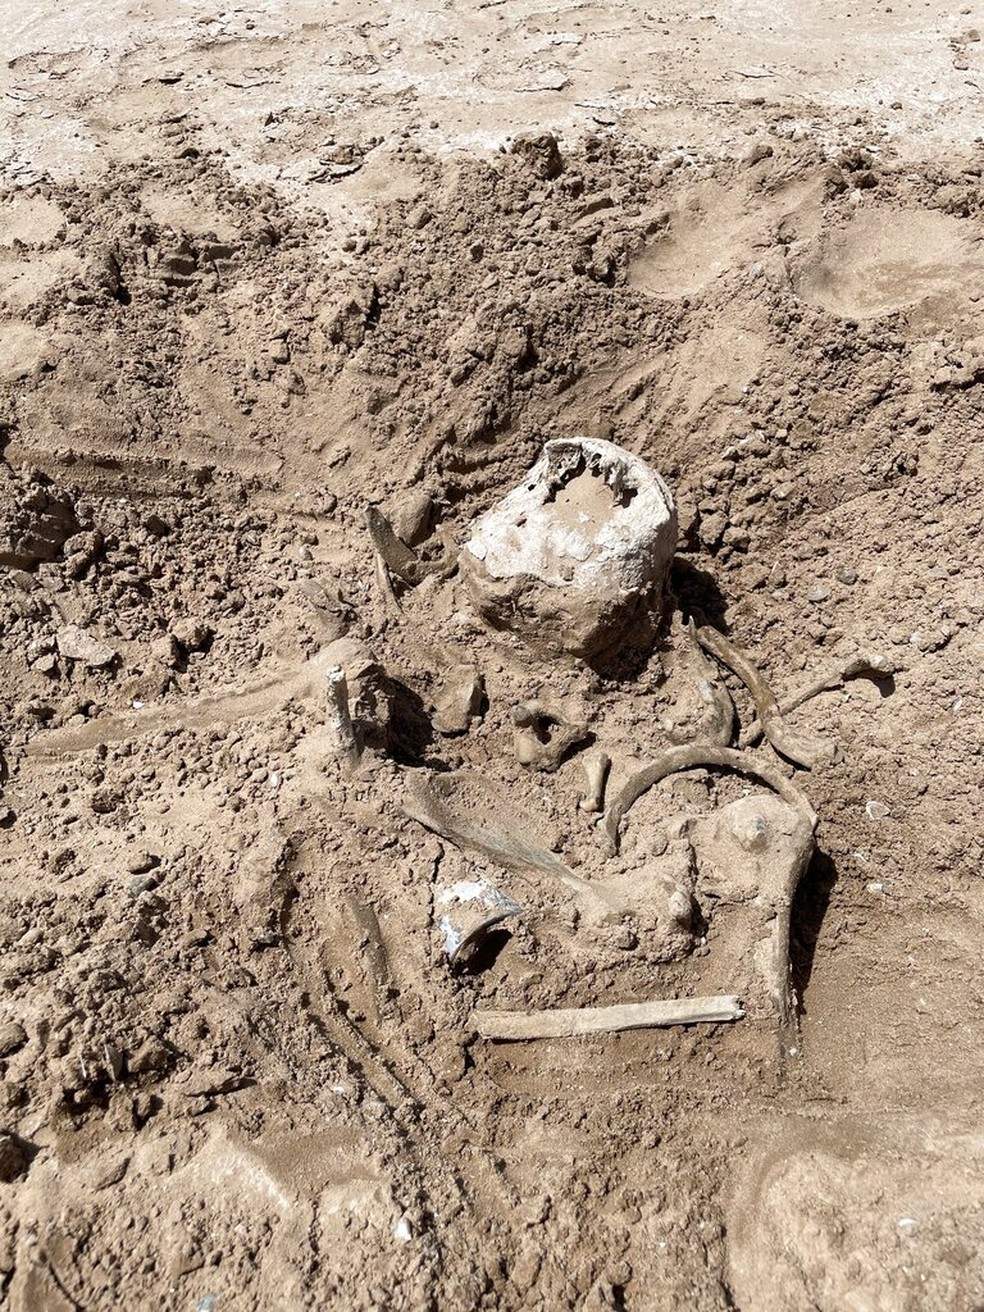 Restos humanos foram encontradas no solo de área antes alagada de um lago em Las Vegas — Foto:  Lindsey Melvin via AP